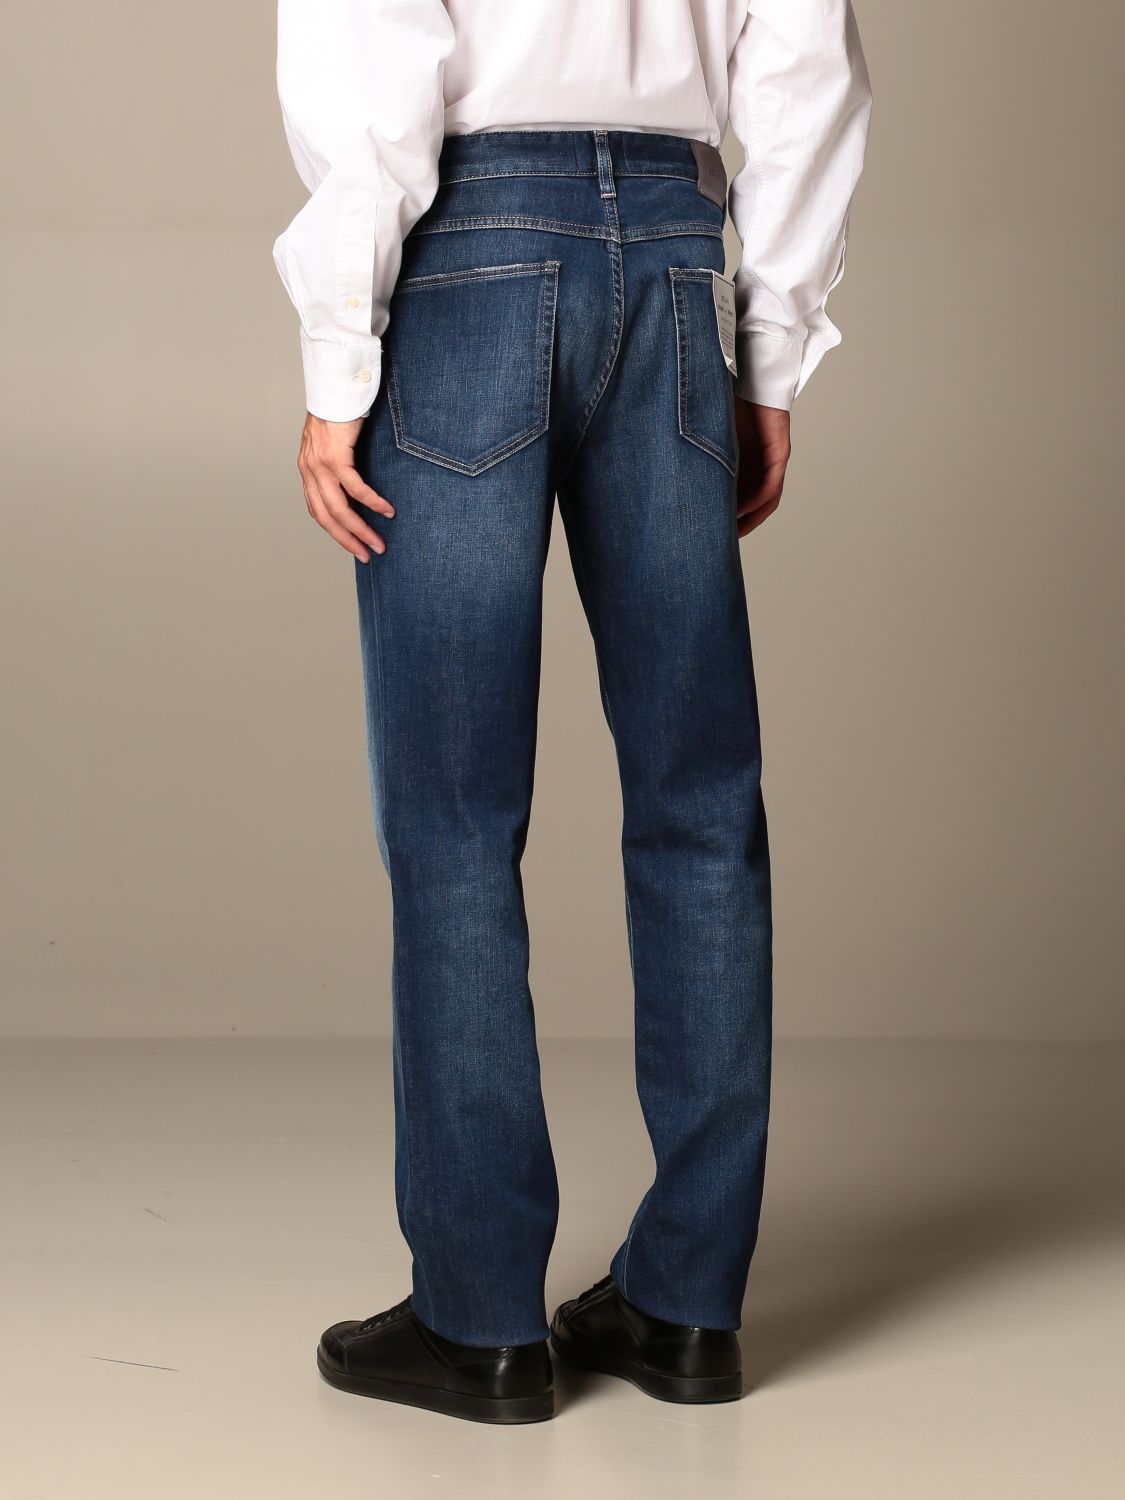 Z Zegna Outlet: jeans with 5 pockets - Denim | Jeans Z Zegna ZZ530 ...